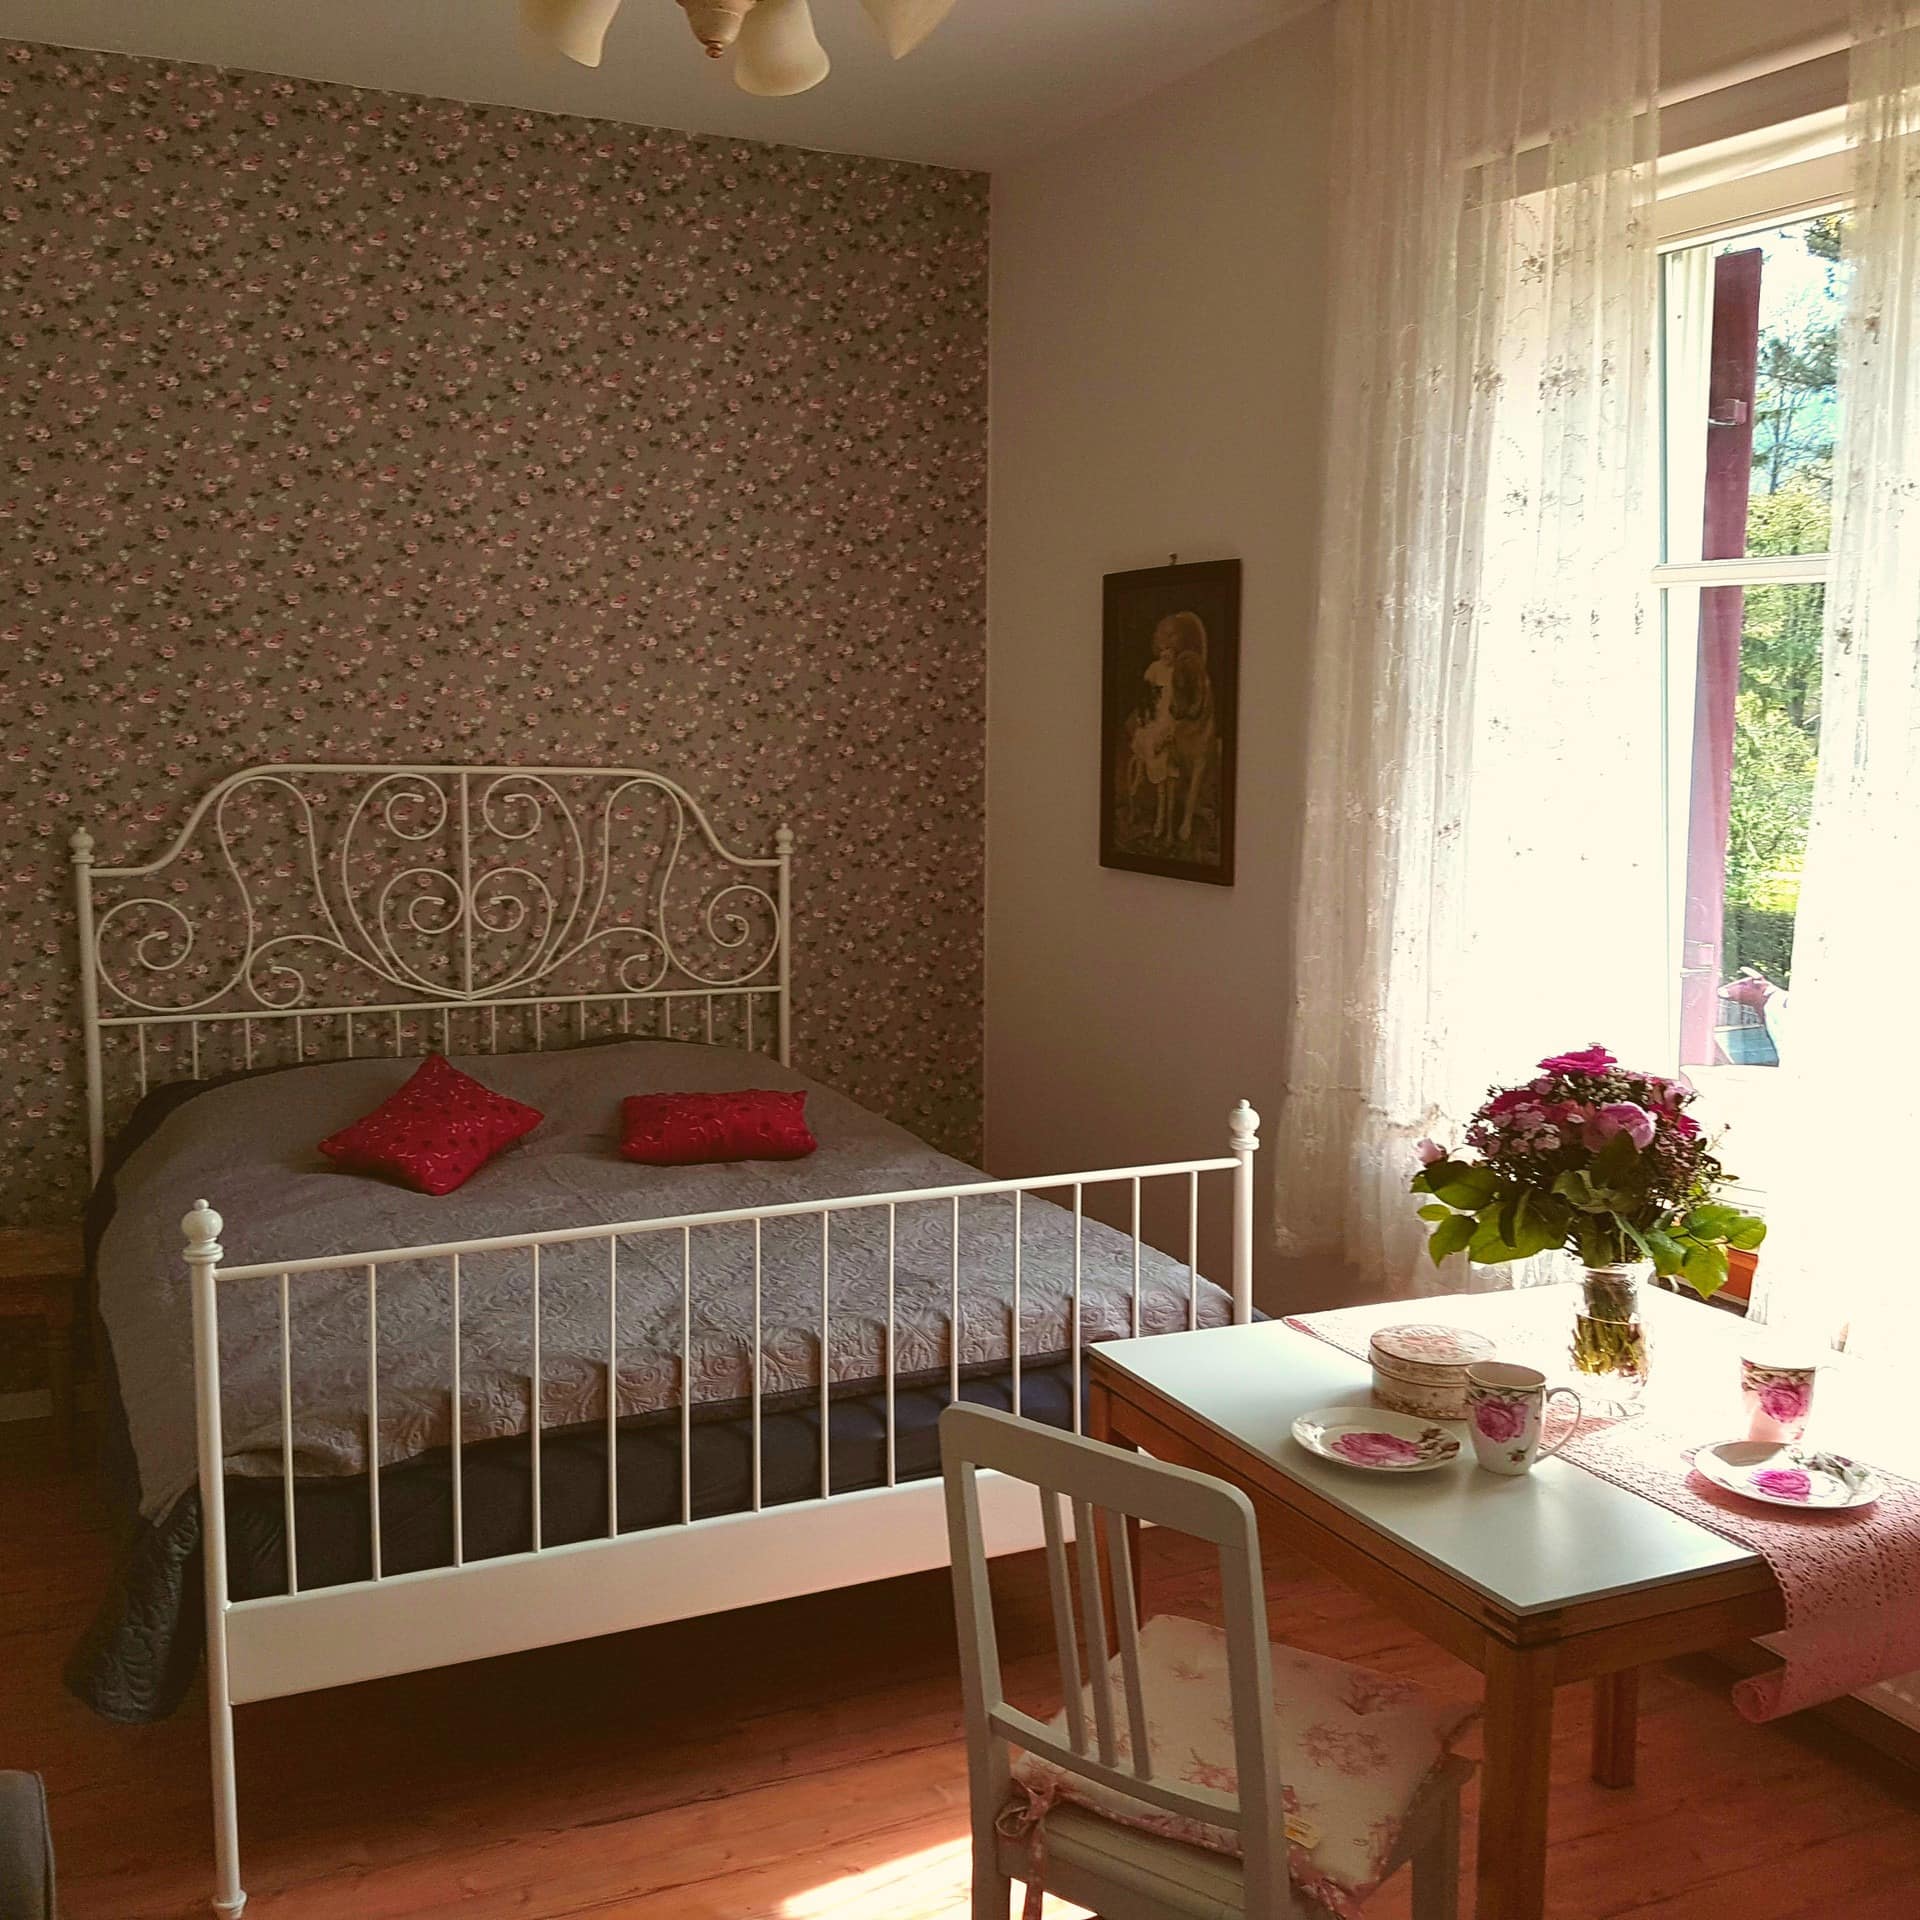 Verspielt eingerichtetes Schlafzimmer einer Ferienwohnung in Garmisch-Partenkirchen.